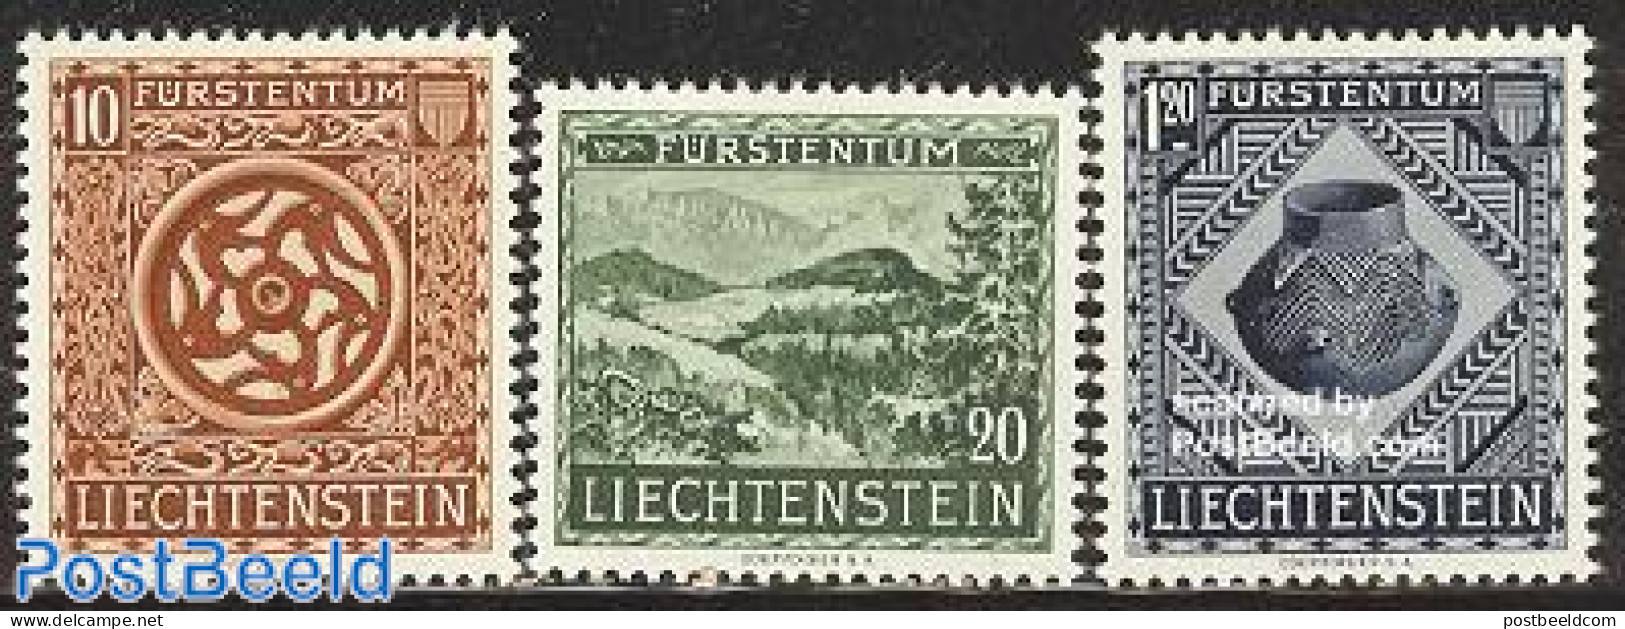 Liechtenstein 1953 National Museum 3v, Mint NH, History - Archaeology - Art - Museums - Neufs